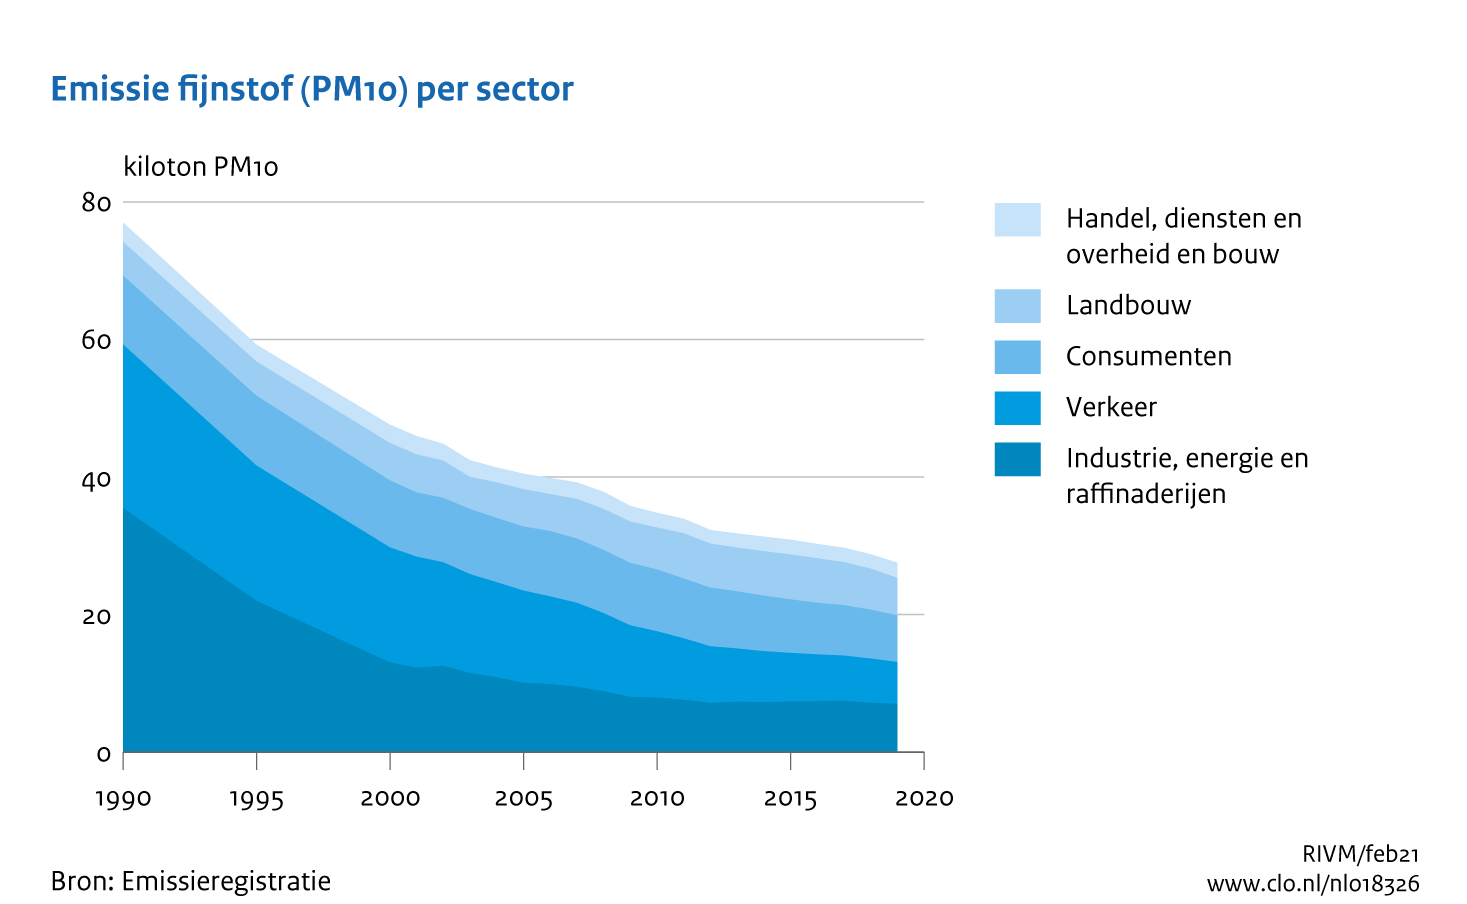 Figuur PM10-emissie per sector. In de rest van de tekst wordt deze figuur uitgebreider uitgelegd.